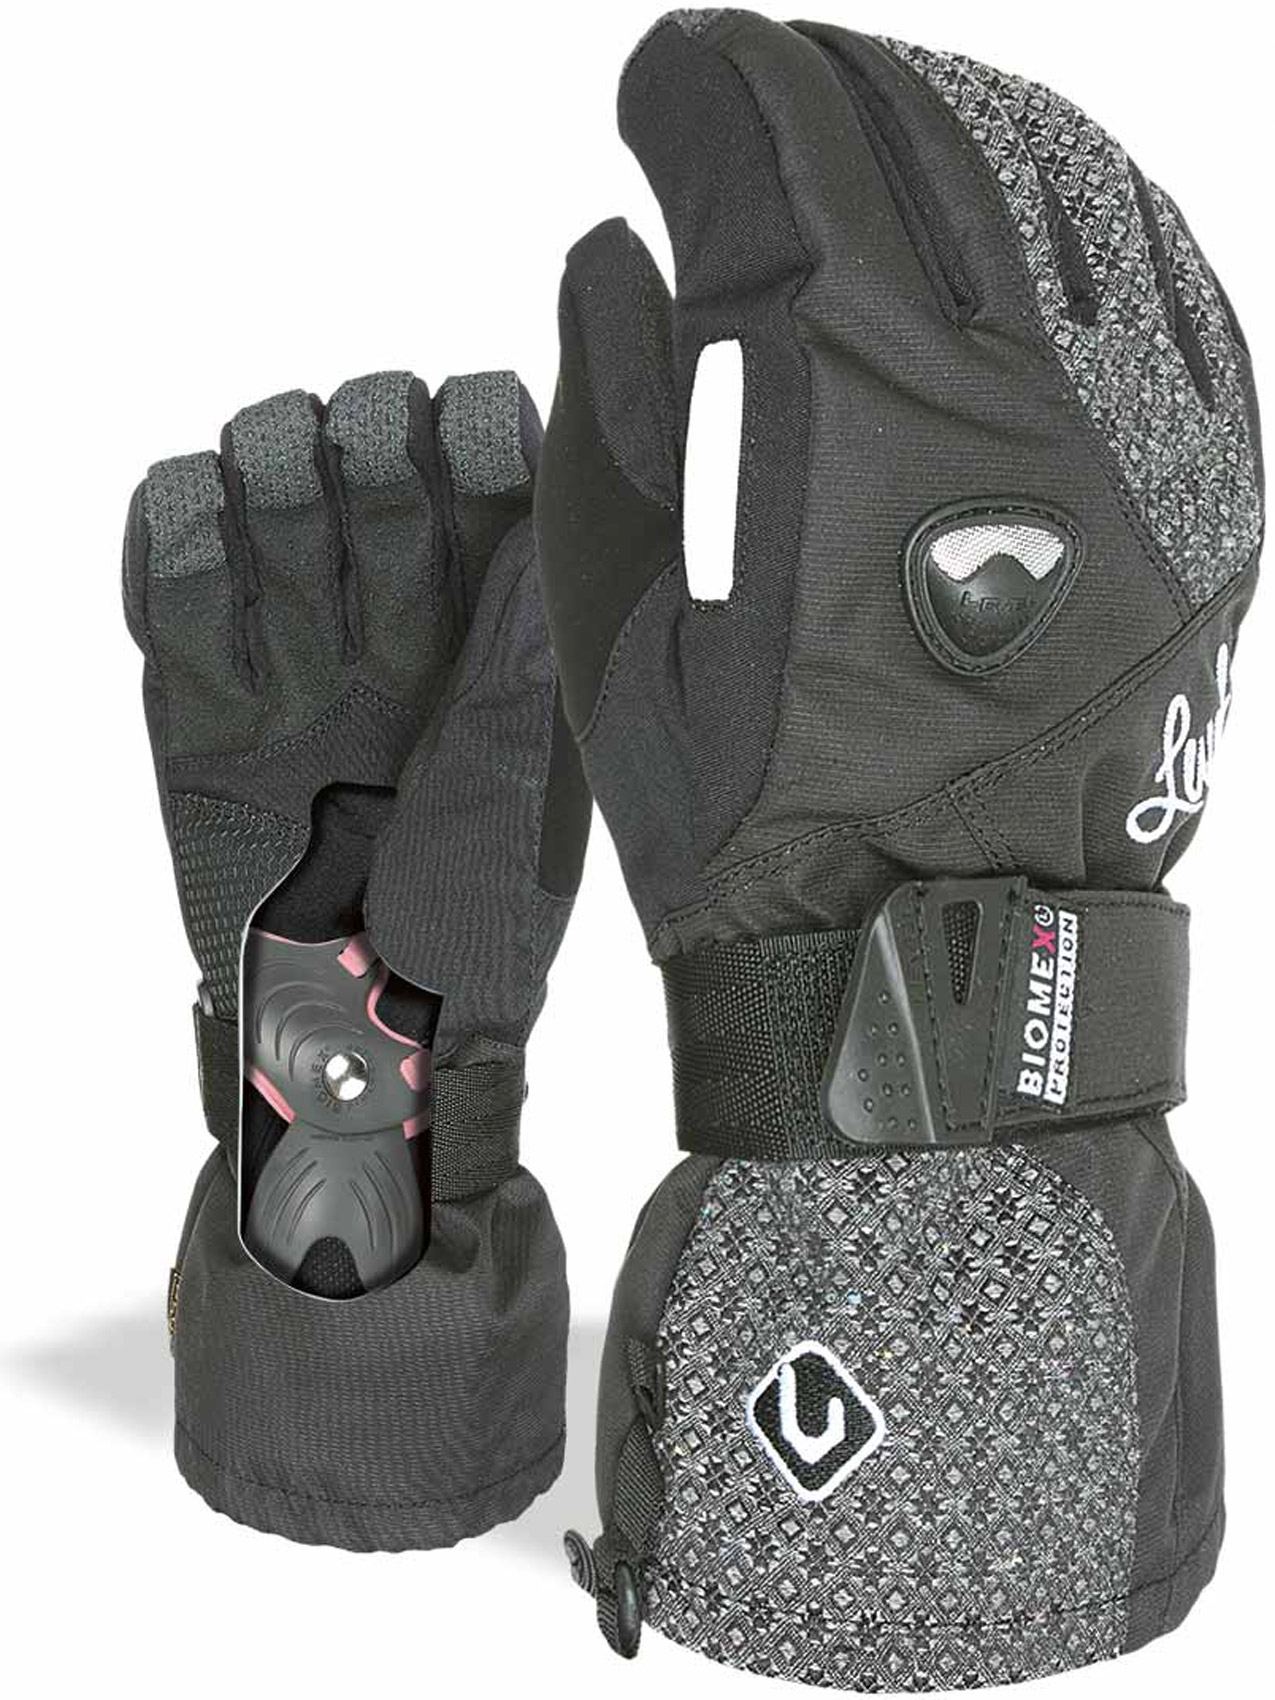 Inner ski gloves